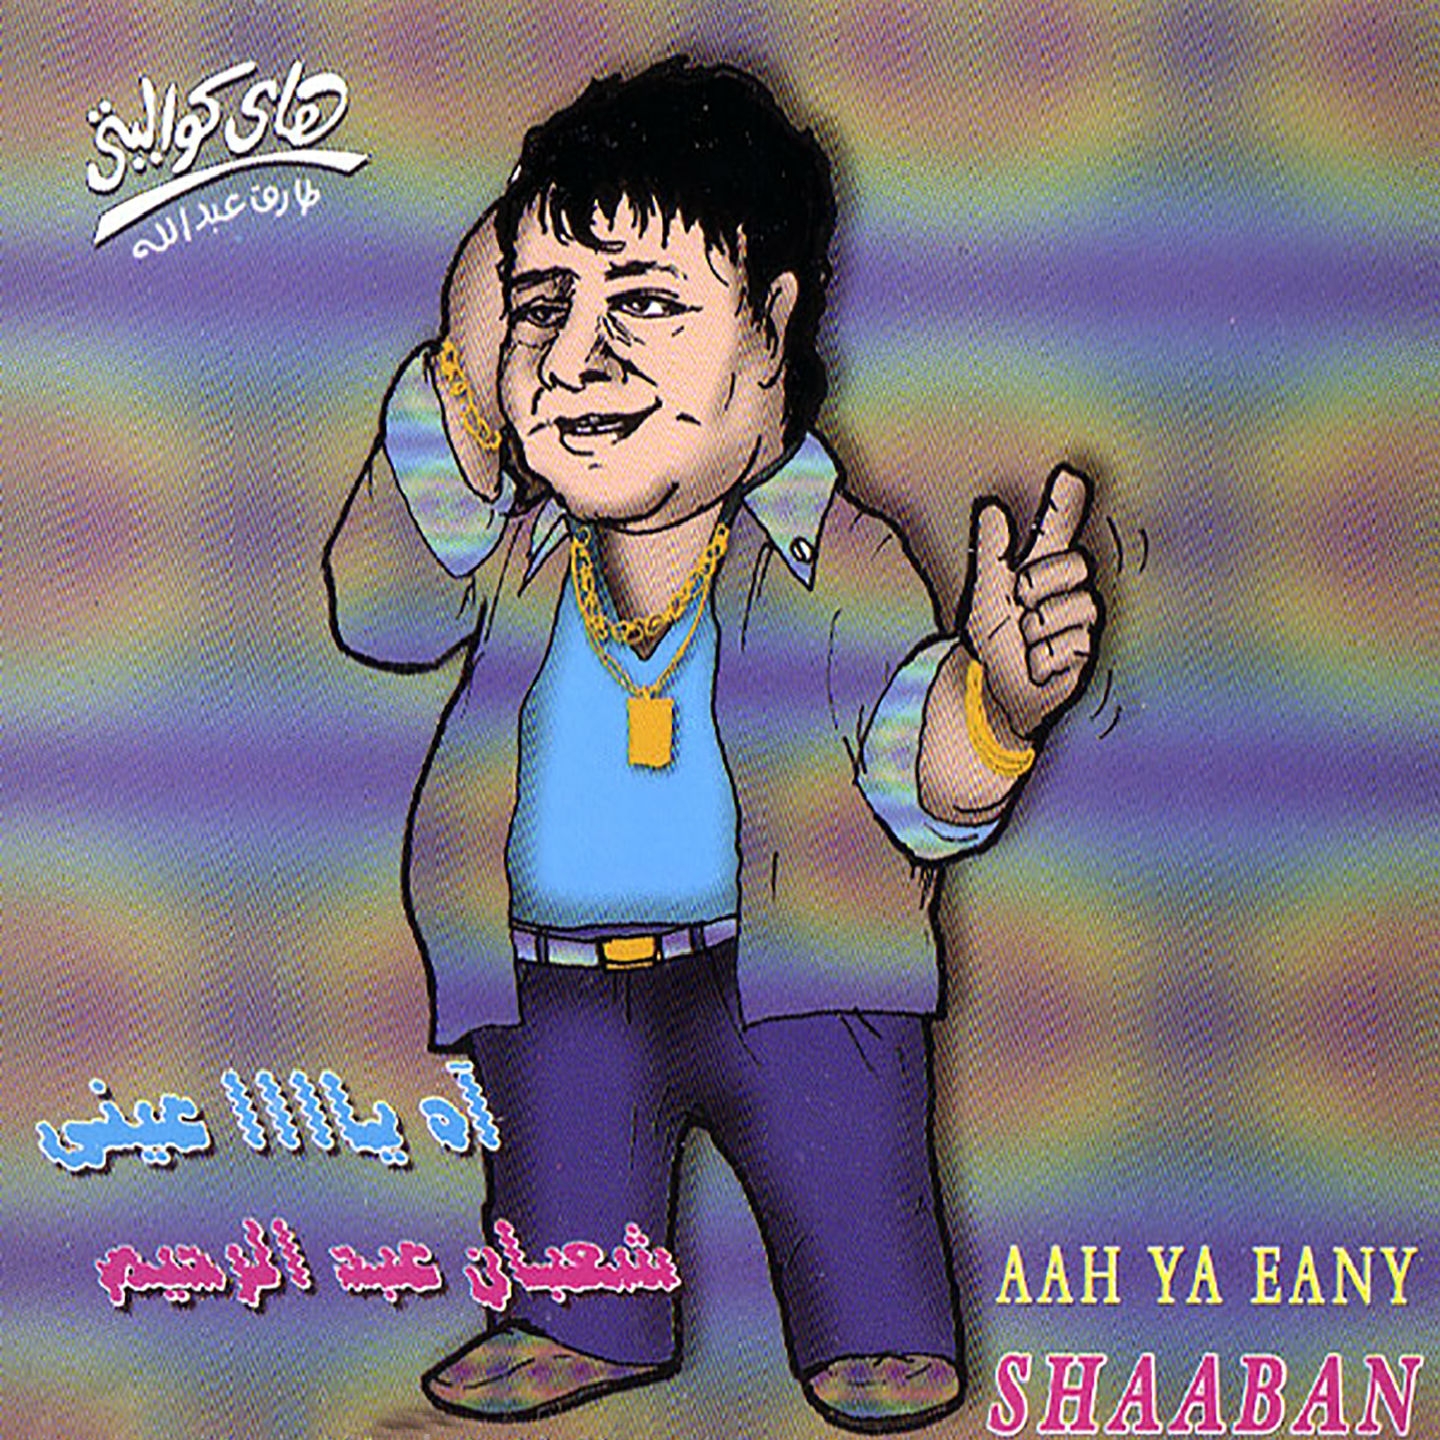 Adeem El Ahaly (Remix)